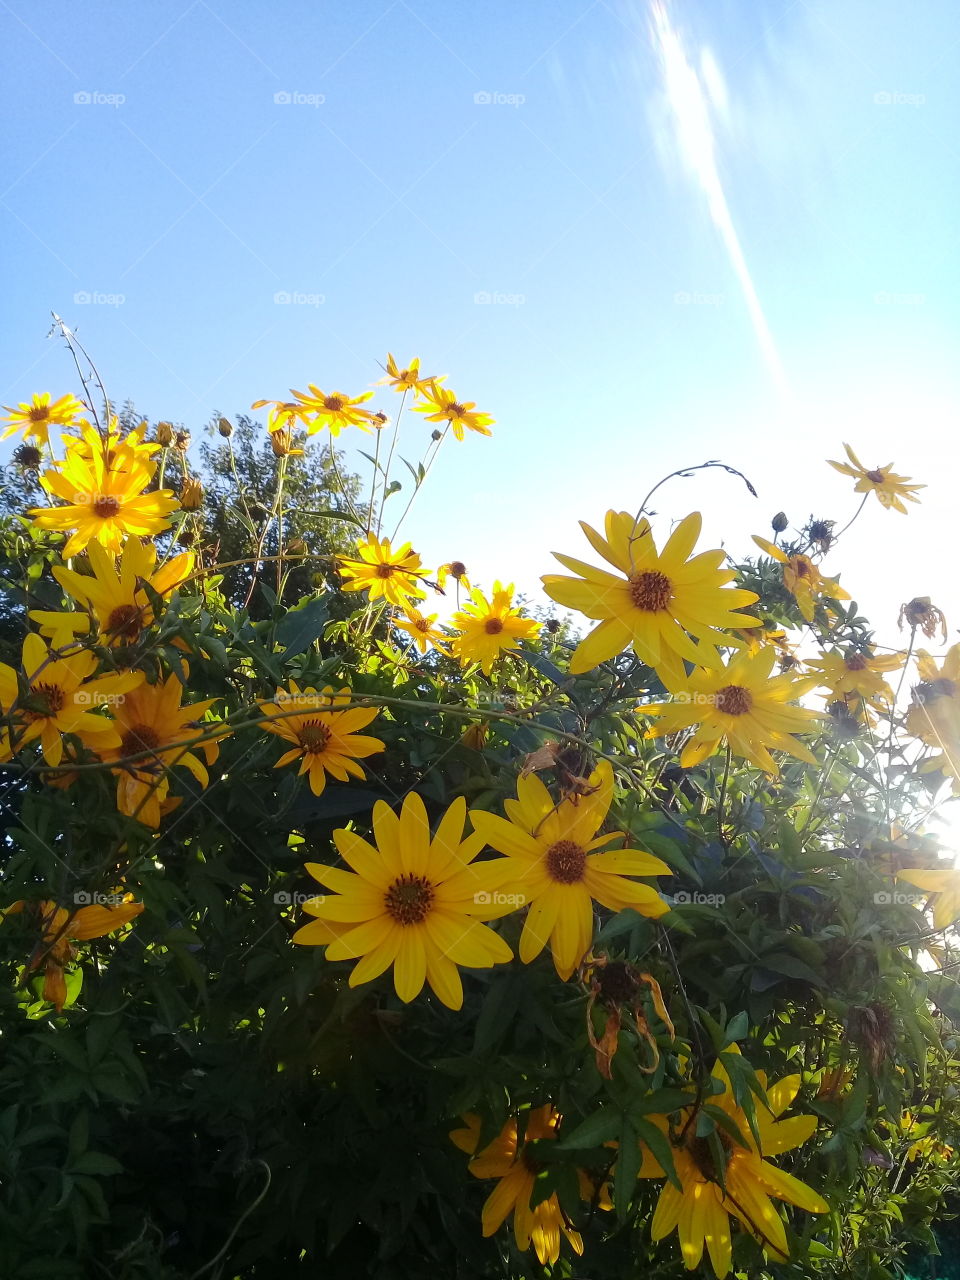 Cerco de grandes flores amarillas orientadas hacia la posición del sol en una cálida tarde de los últimos días de verano.